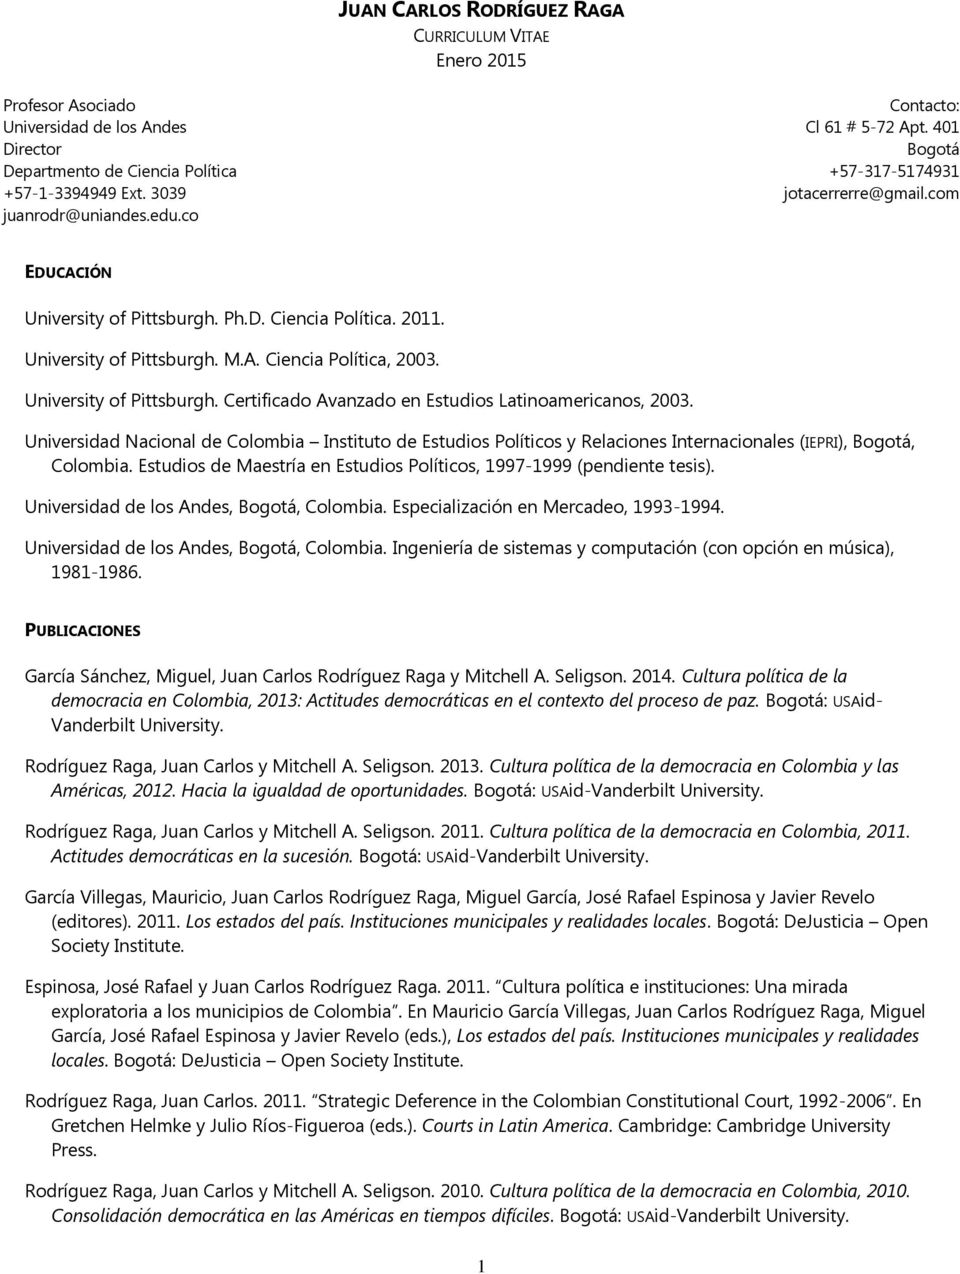 University of Pittsburgh. Certificado Avanzado en Estudios Latinoamericanos, 2003.